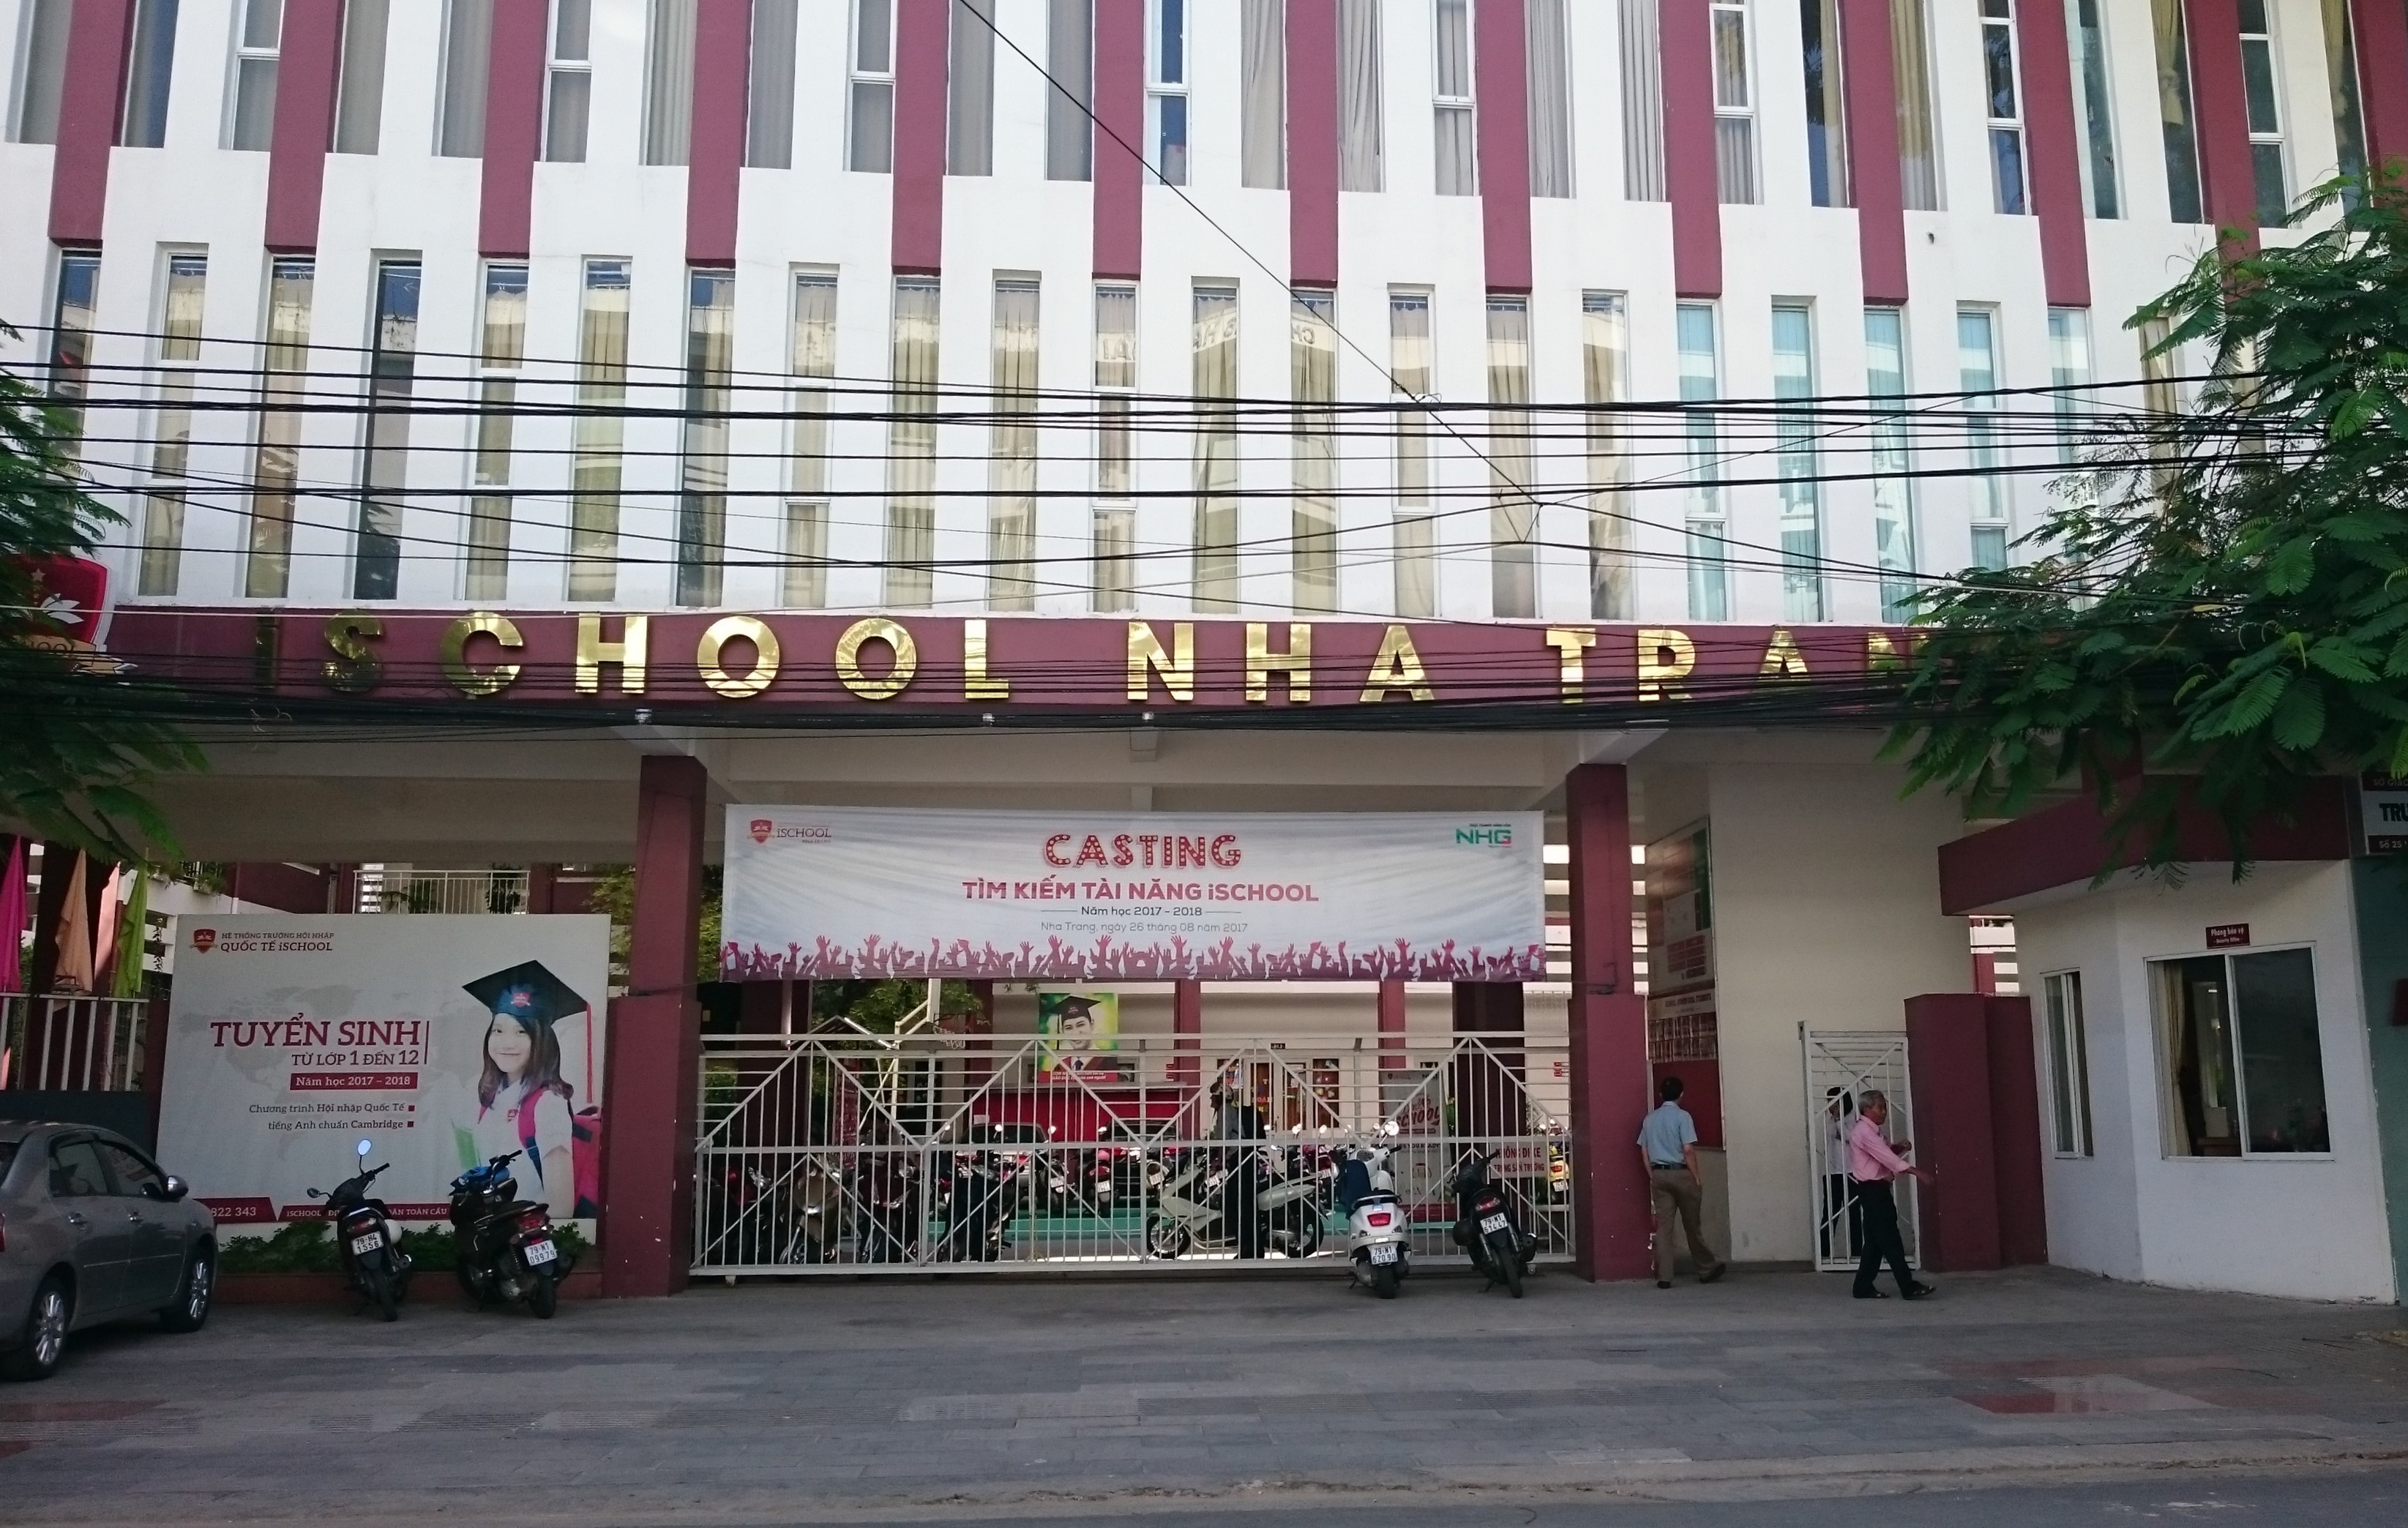 Ischool Nha Trang mở cửa trở lại sau vụ ngộ độc nhưng tạm dừng bán trú